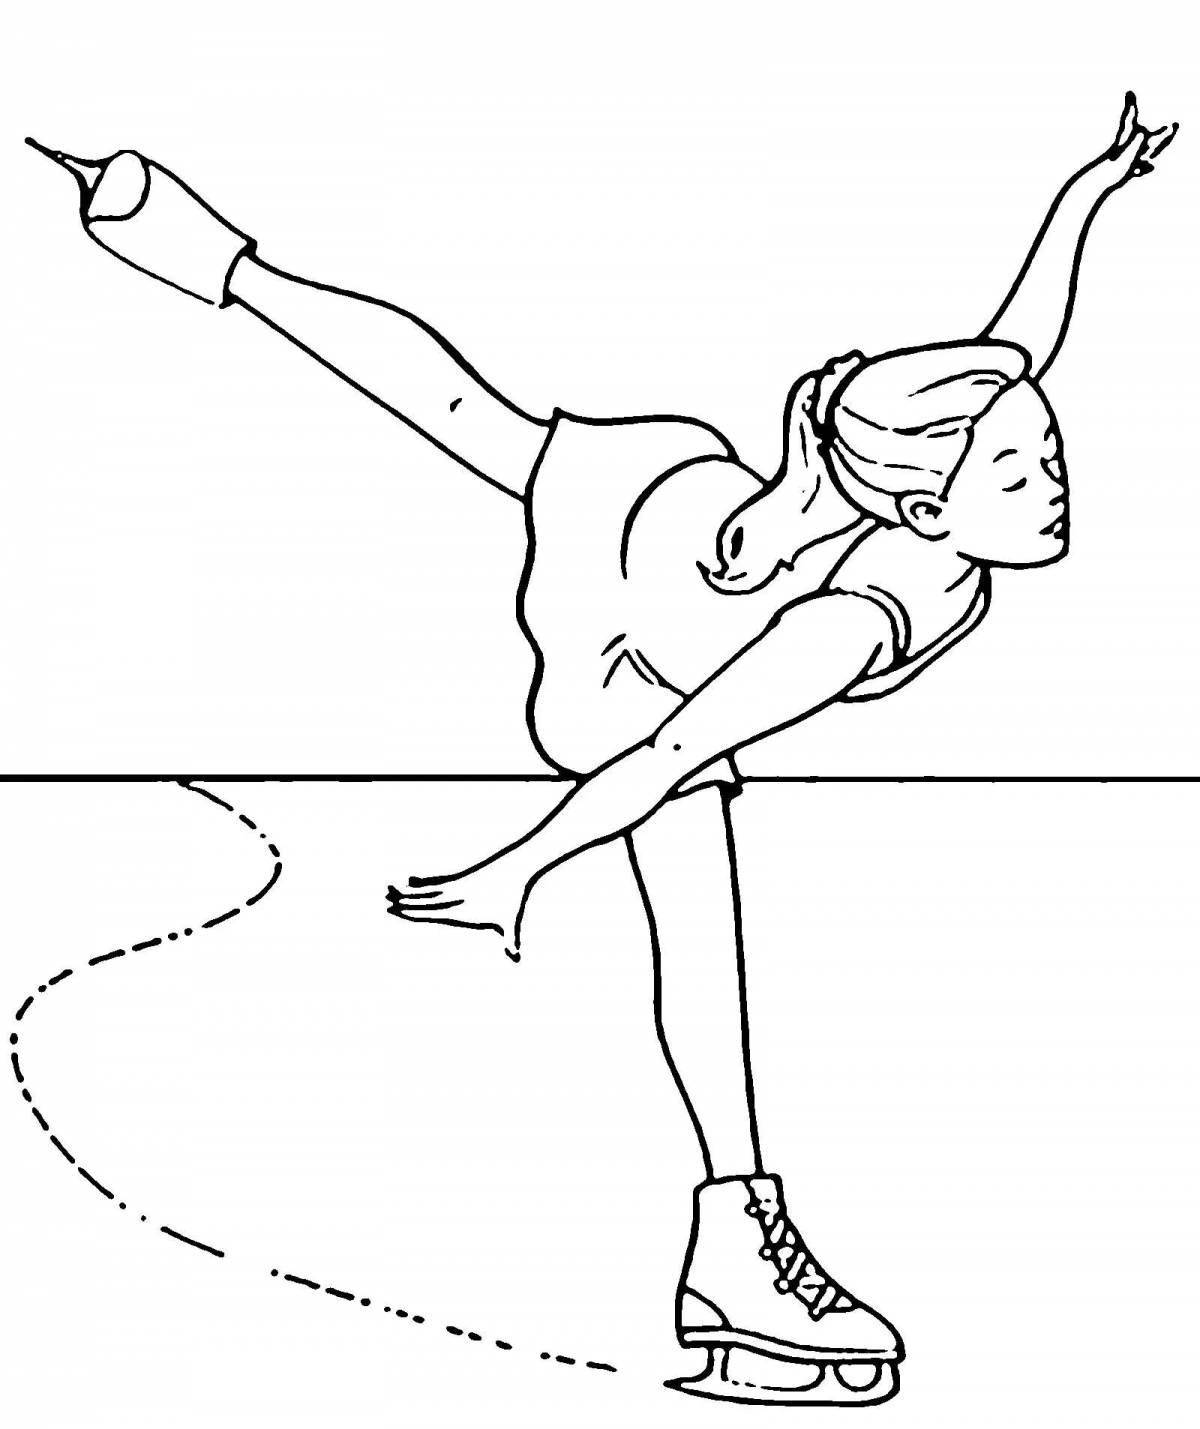 Картинка с девочкой на коньках для онлайн раскрашивания